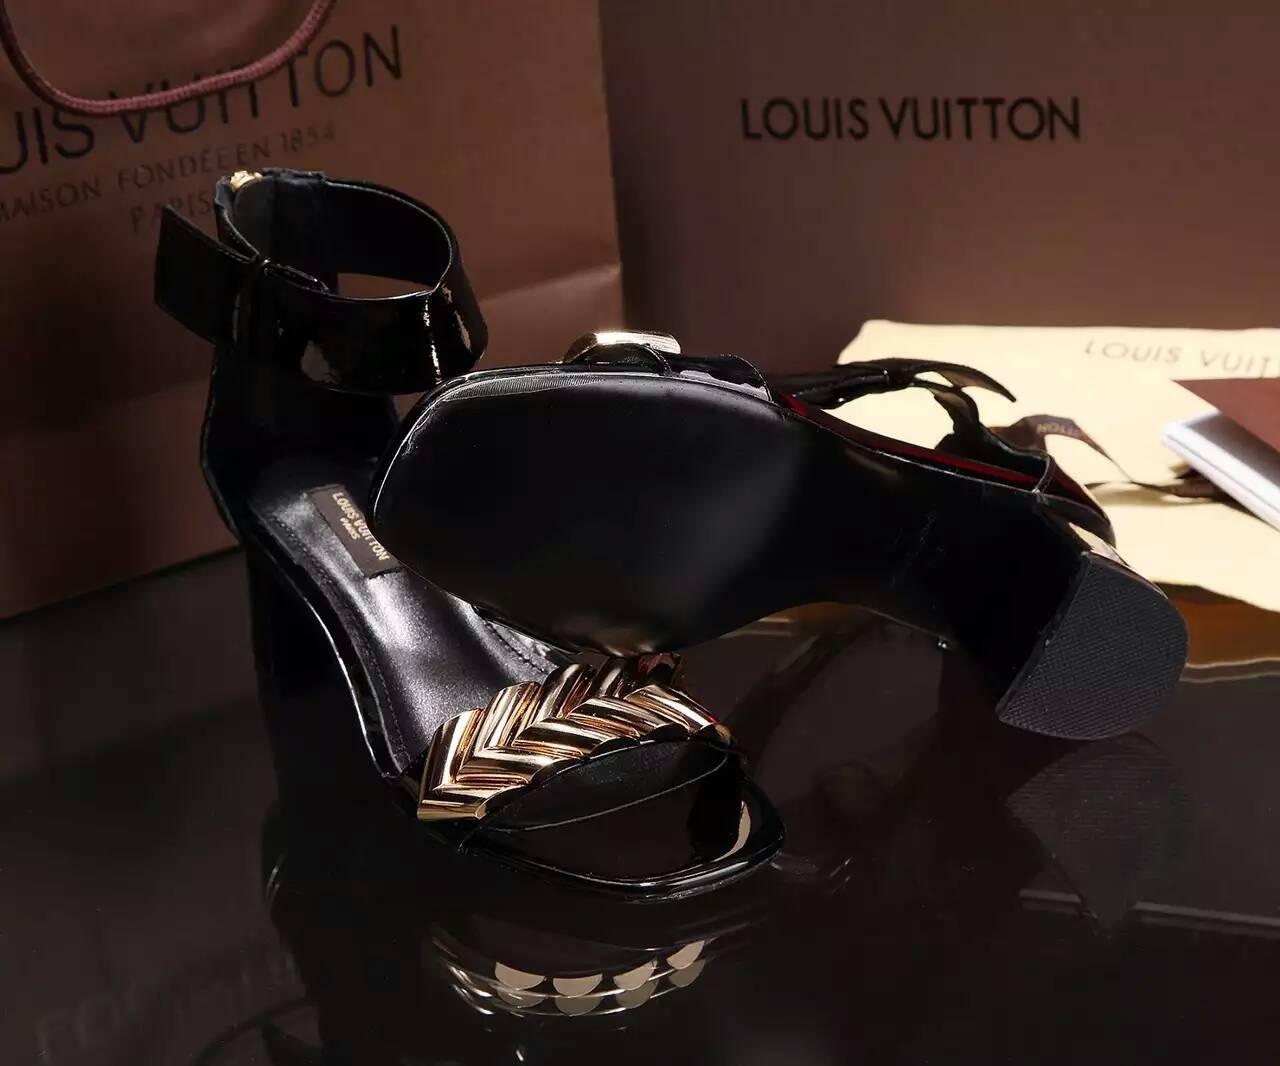 ルイヴィトンコピー 靴 2016春夏新作 Louis Vuitton 魅力 レディース サンダル lvshoes160516-7